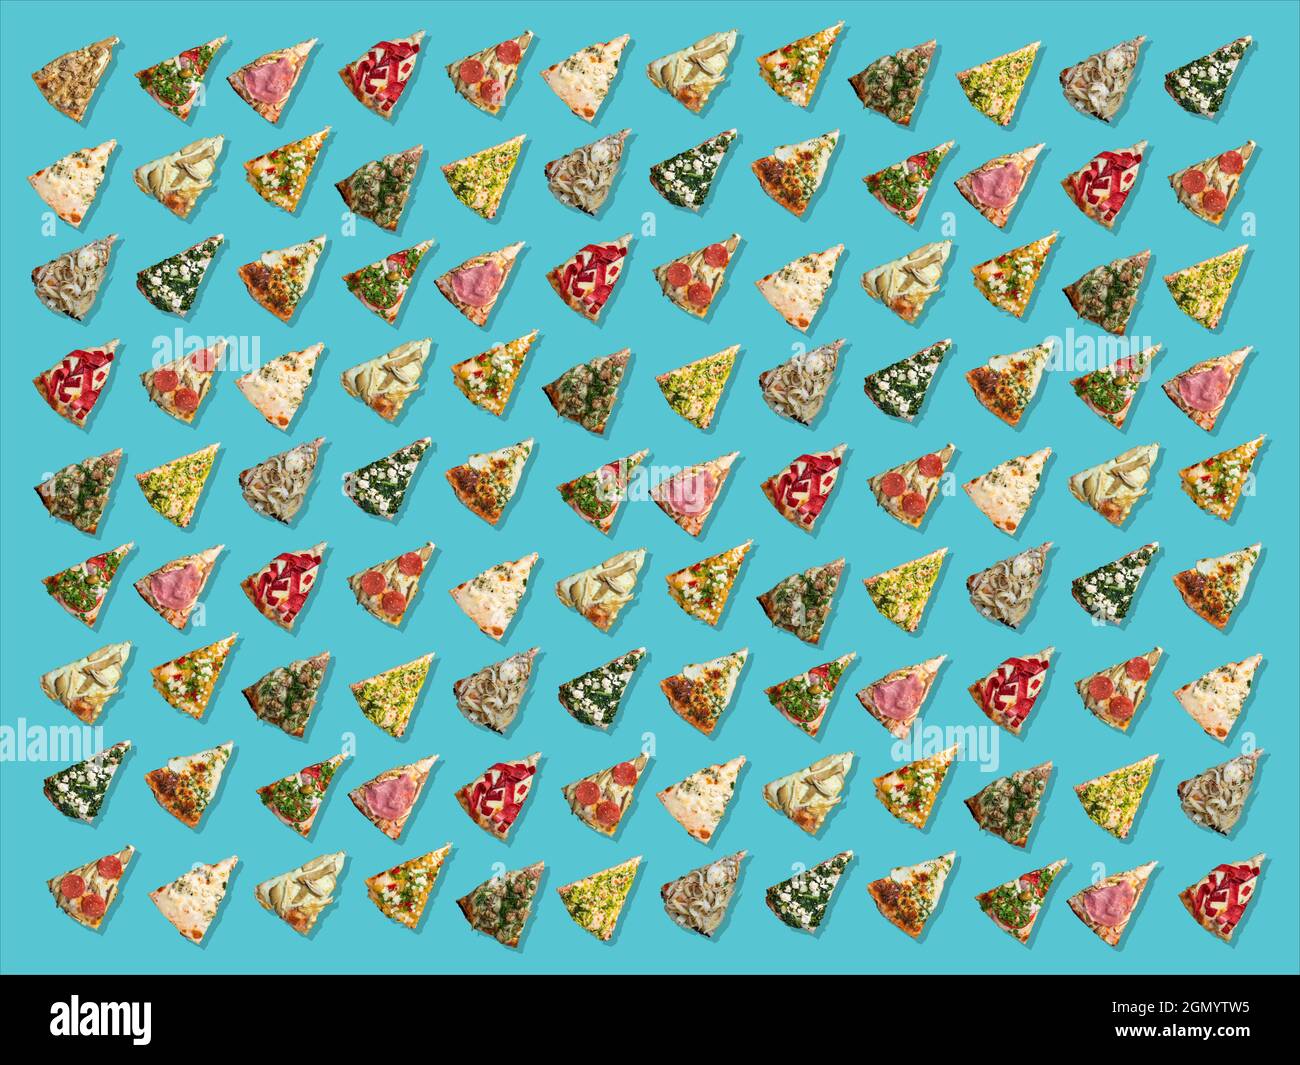 Das Muster besteht aus verschiedenen dreieckigen Pizzascheiben, die diagonal aufgereiht sind. Stockfoto